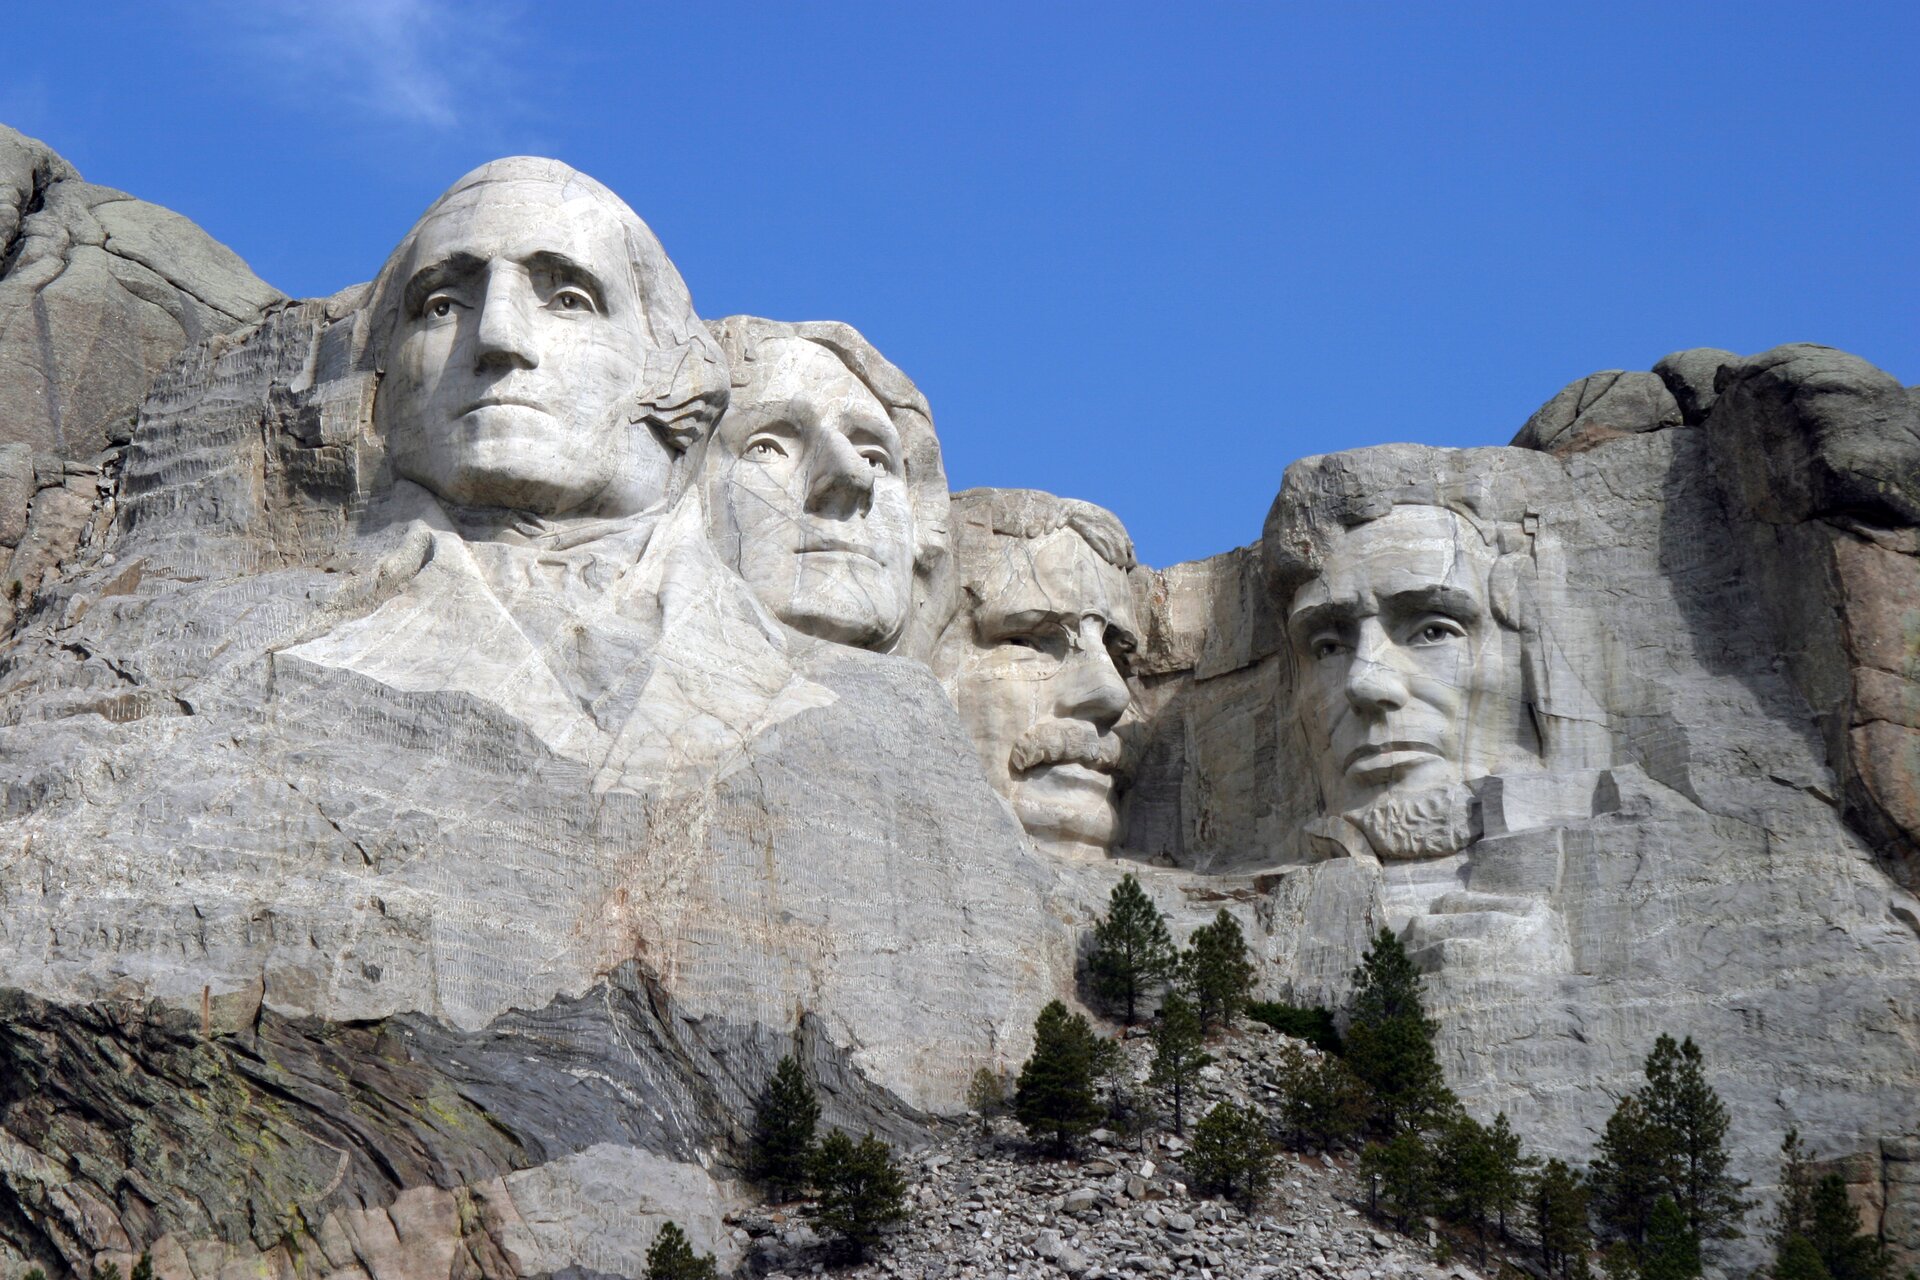 Ilustracja przedstawia „Pomnik Mount Rushmore”, autorstwa Gutzona Borglumy. Ukazuje wykute w skałach głowy czterech prezydentów USA. Od lewej są to: George Washington, Thomas Jefferson, Theodore Roosevelt oraz Abraham Lincoln. Mimika postaci wskazuje na powagę.